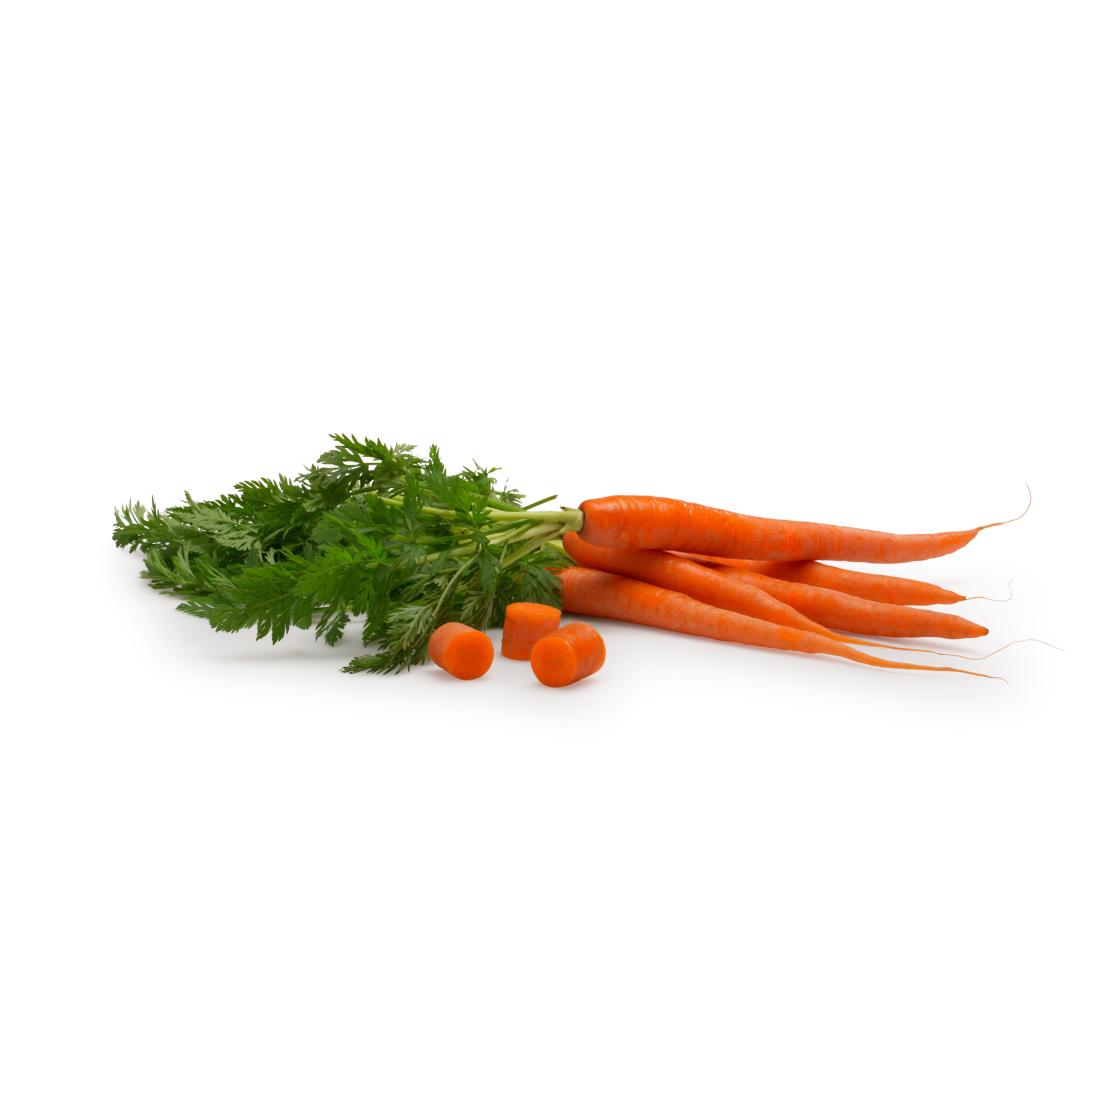 Carrots cut print